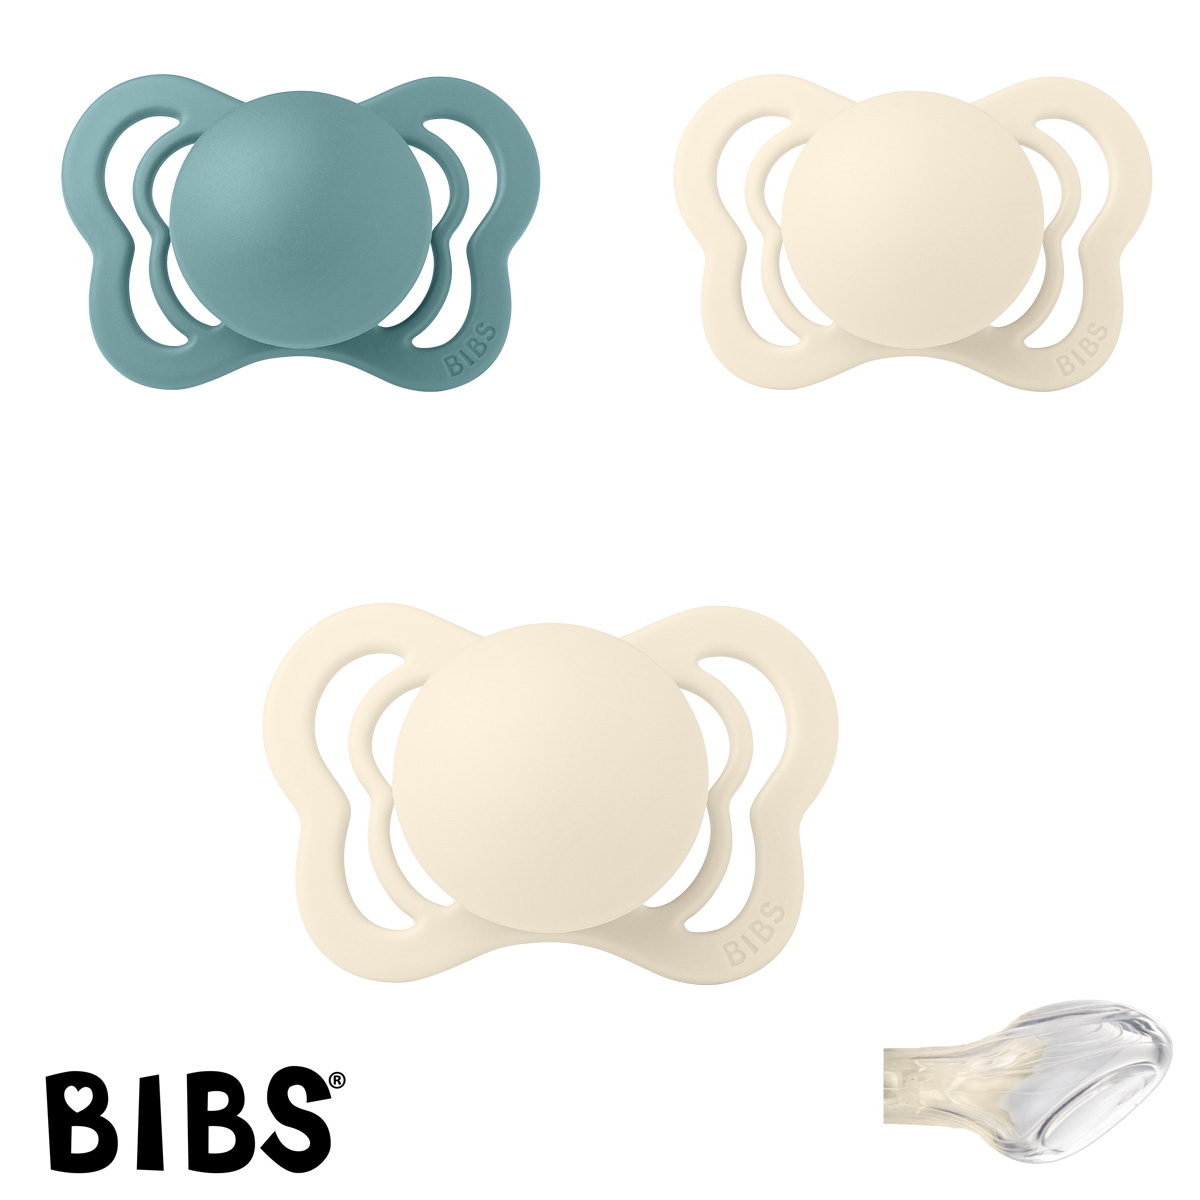 BIBS Couture Sutter med navn str1, 2 Ivory, 1 Island Sea, Anatomisk Silikone, Pakke med 3 sutter